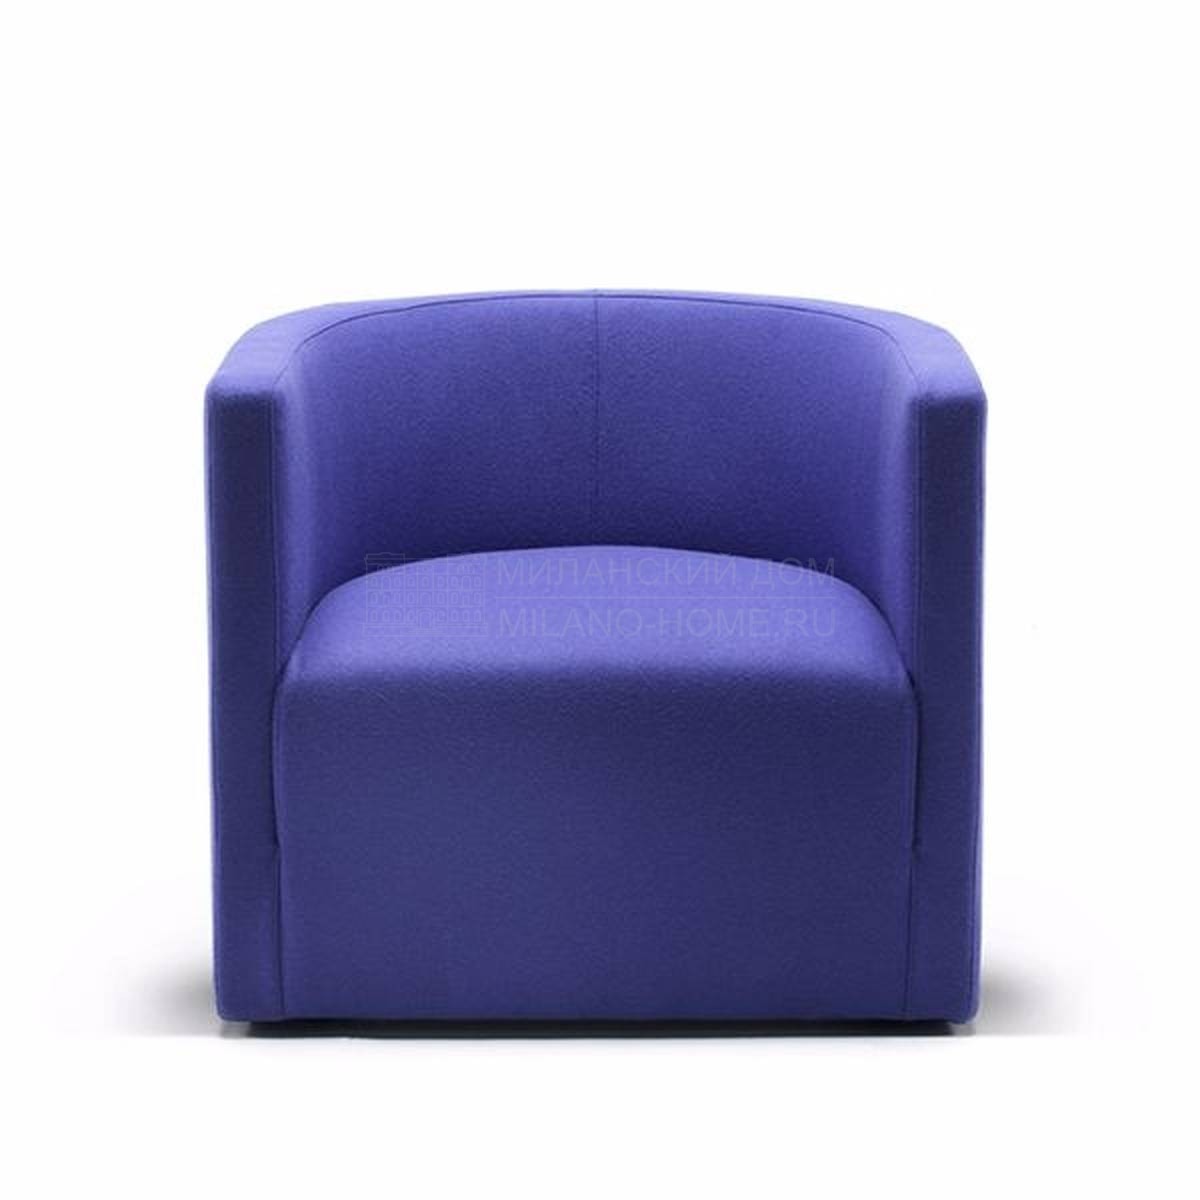 Круглое кресло Confident armchair из Италии фабрики LIVING DIVANI